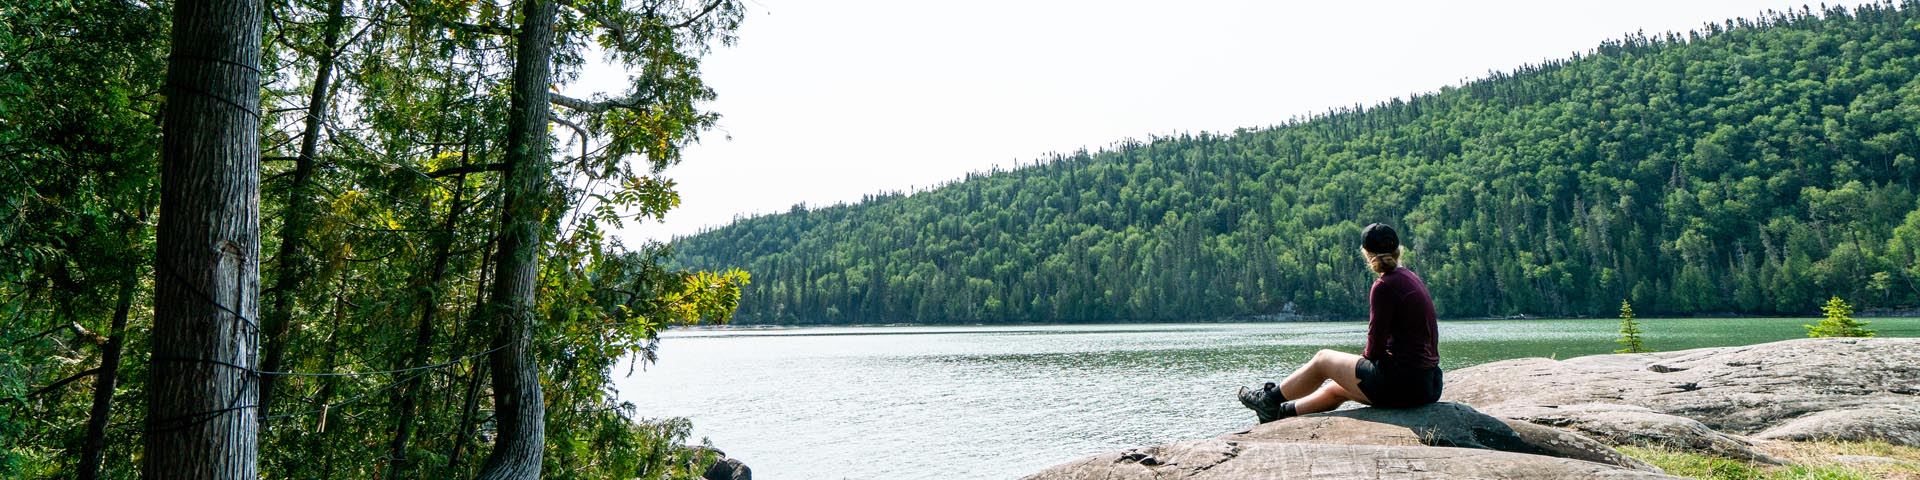 Une femme assise sur un rocher surplombant le lac